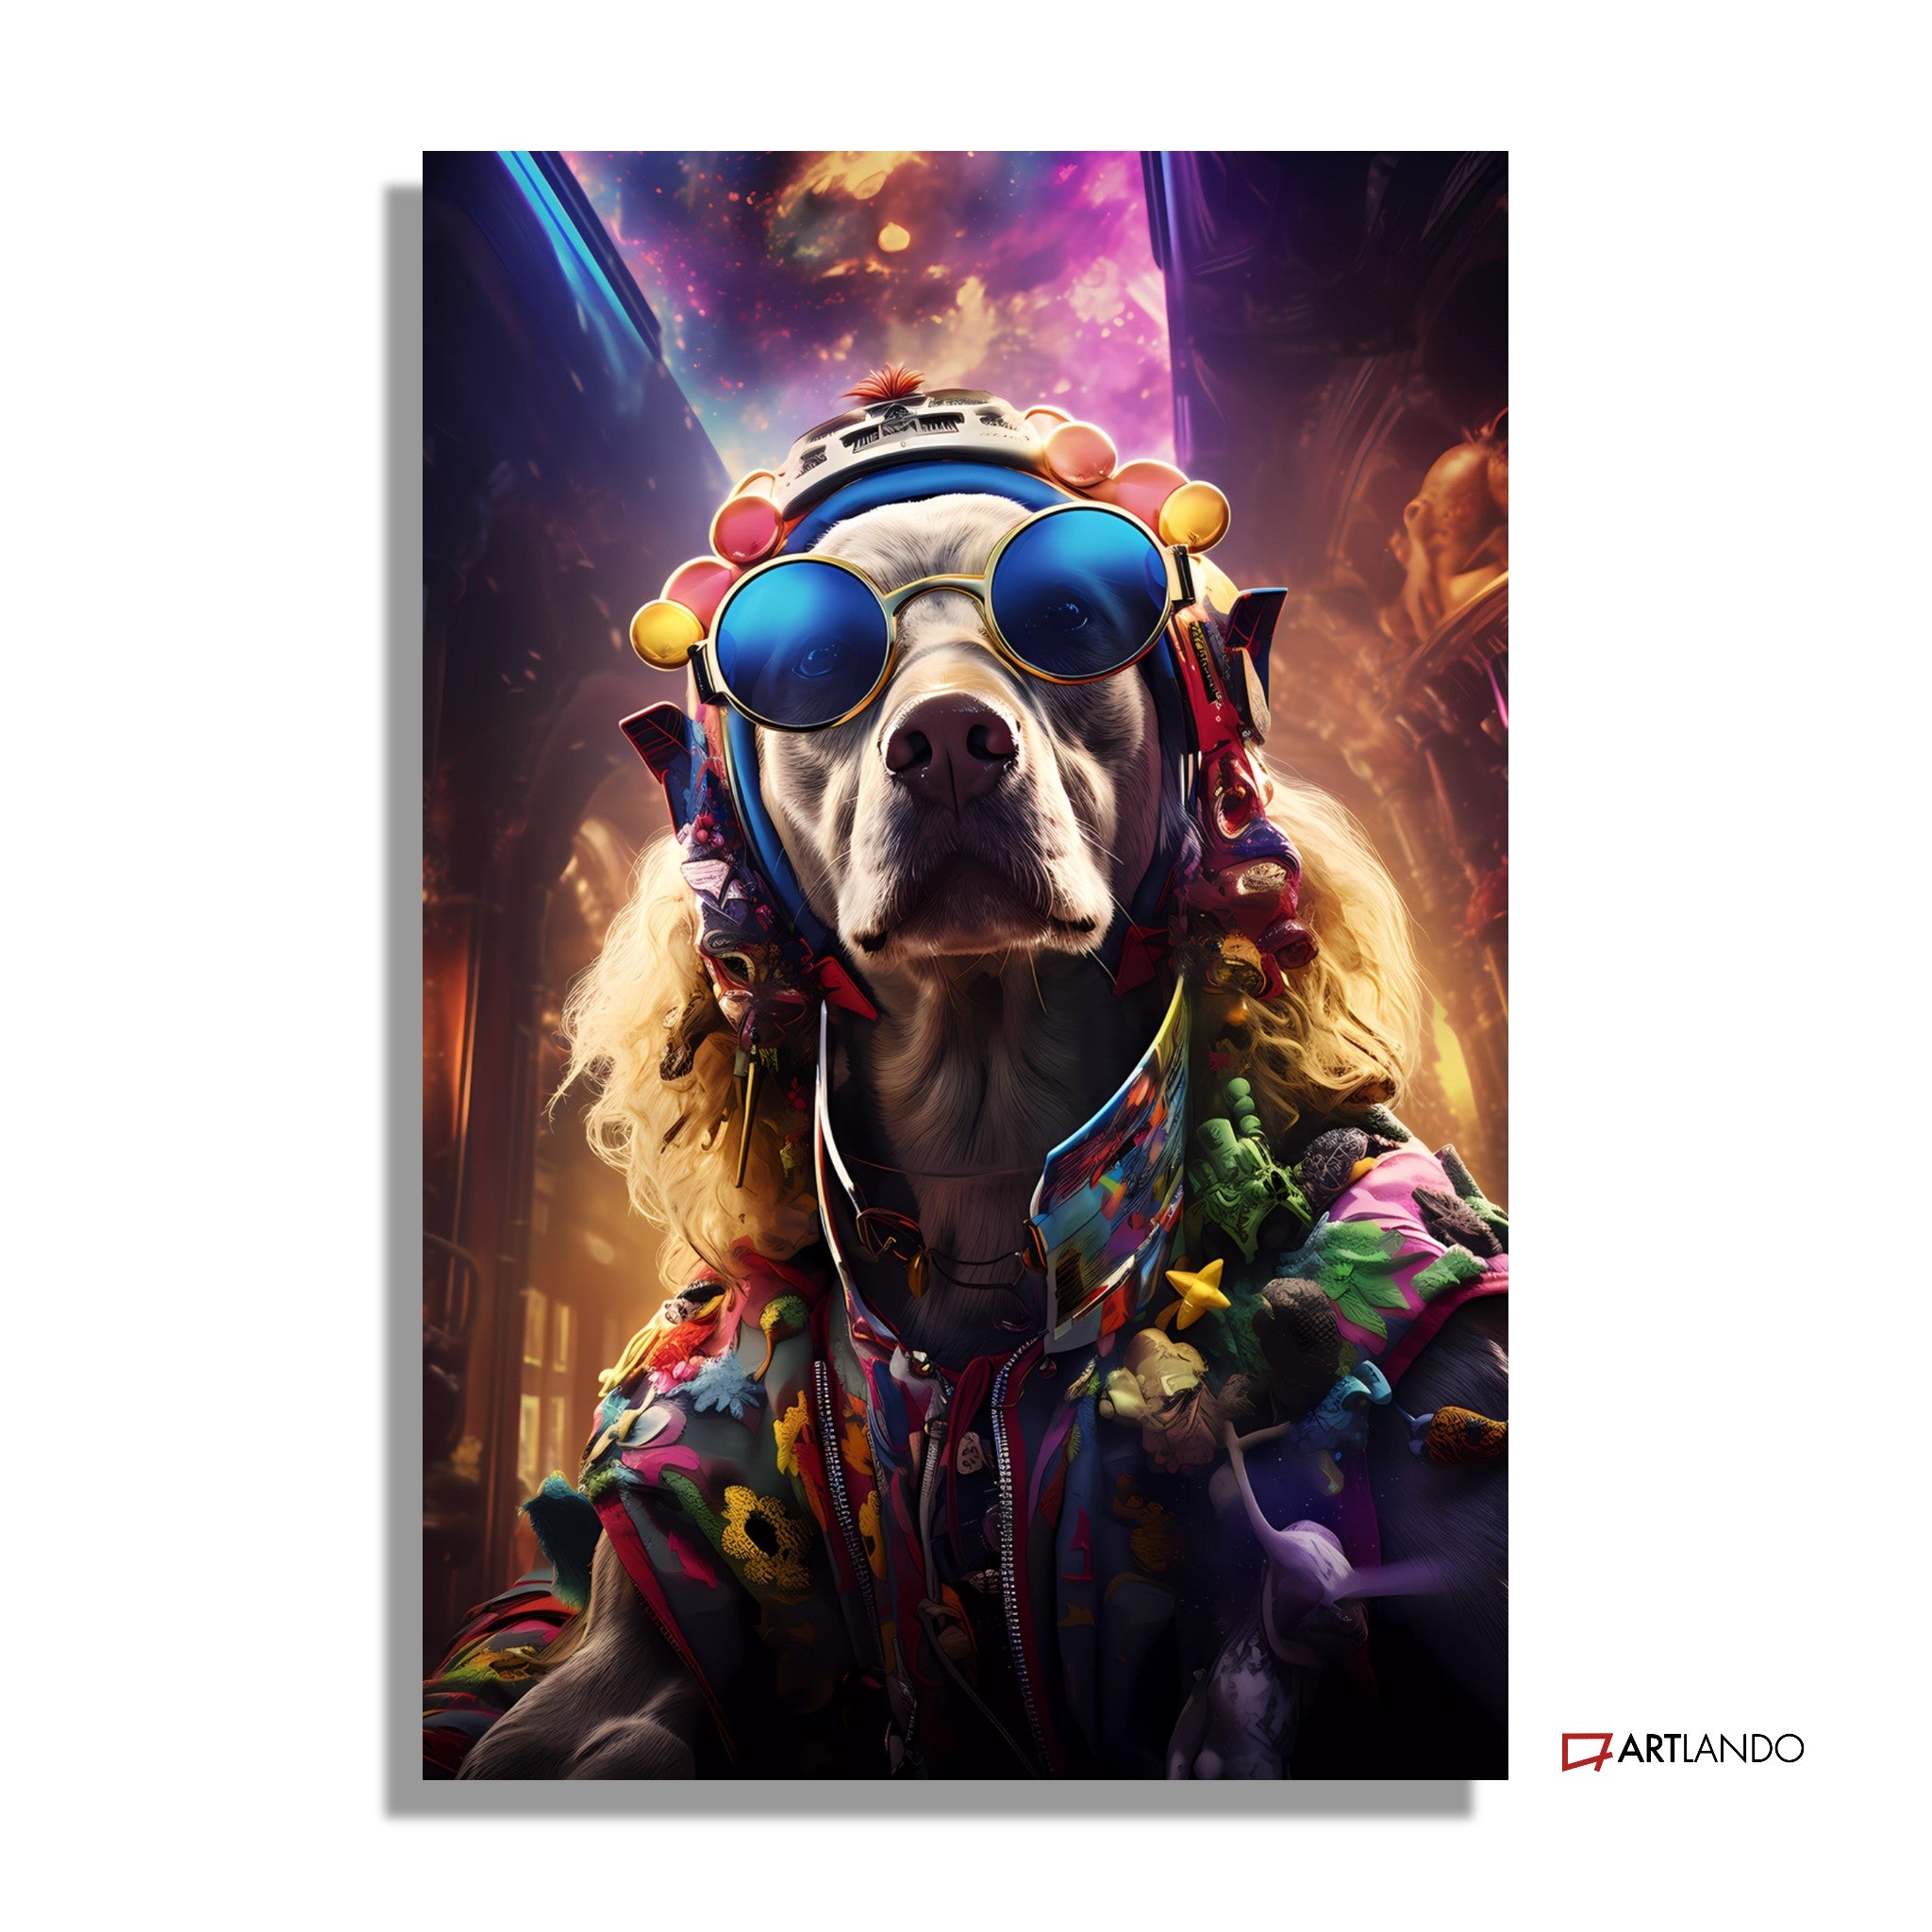 Hippie Hund in psychedelischer Welt